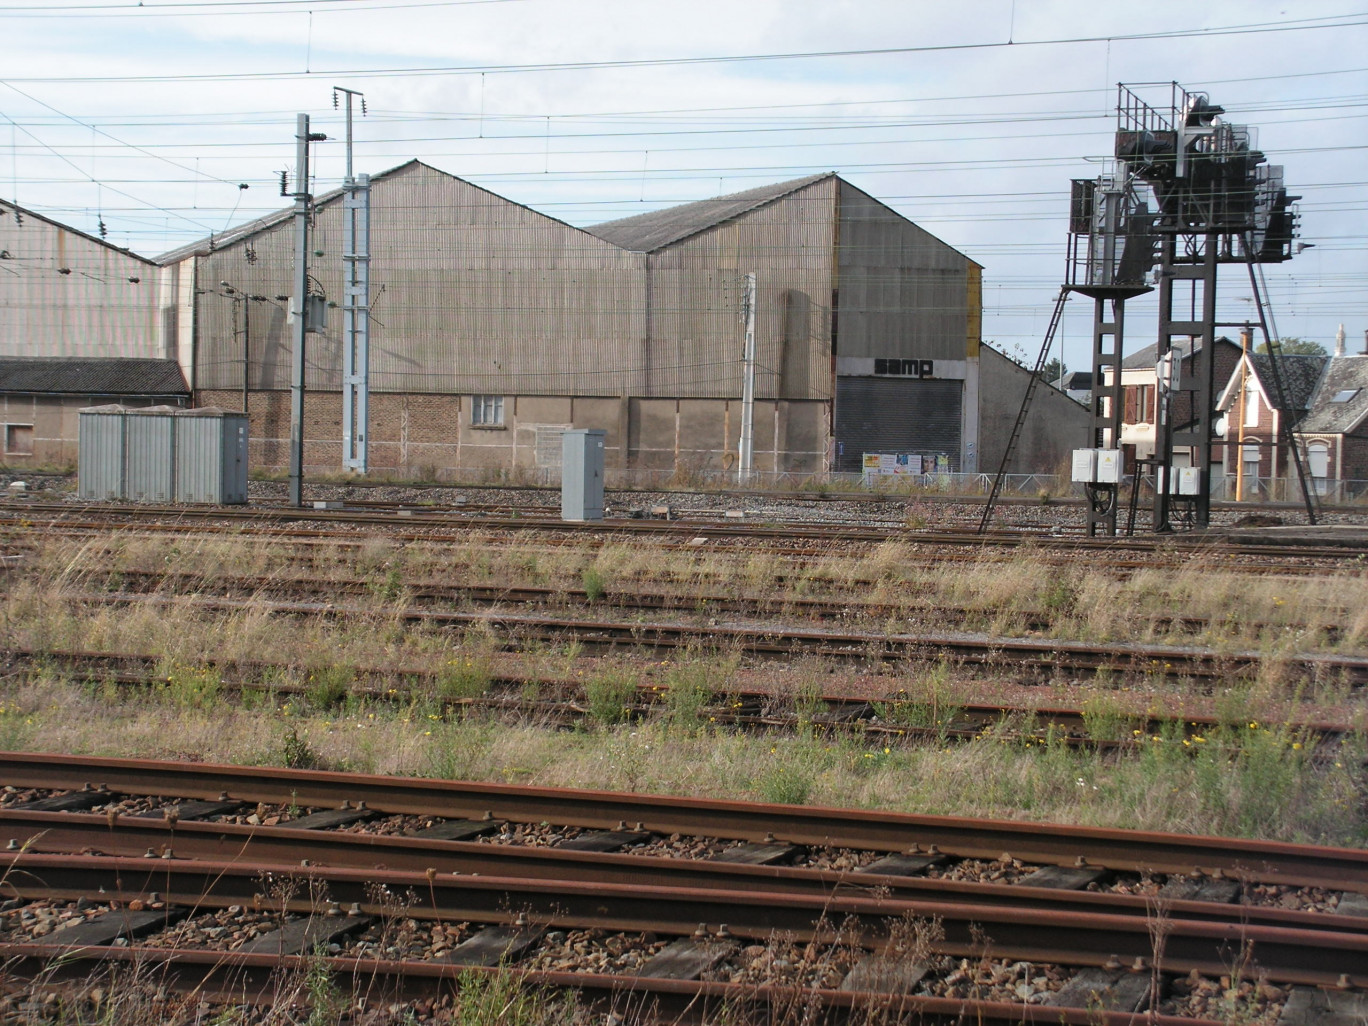 L’ancien bâtiment industriel fait aussi partie des friches qui seront traitées dans le cadre de la rénovation urbaine à grande échelle en cours actuellement à Aulnoye-Aymeries. La gare est toute proche.